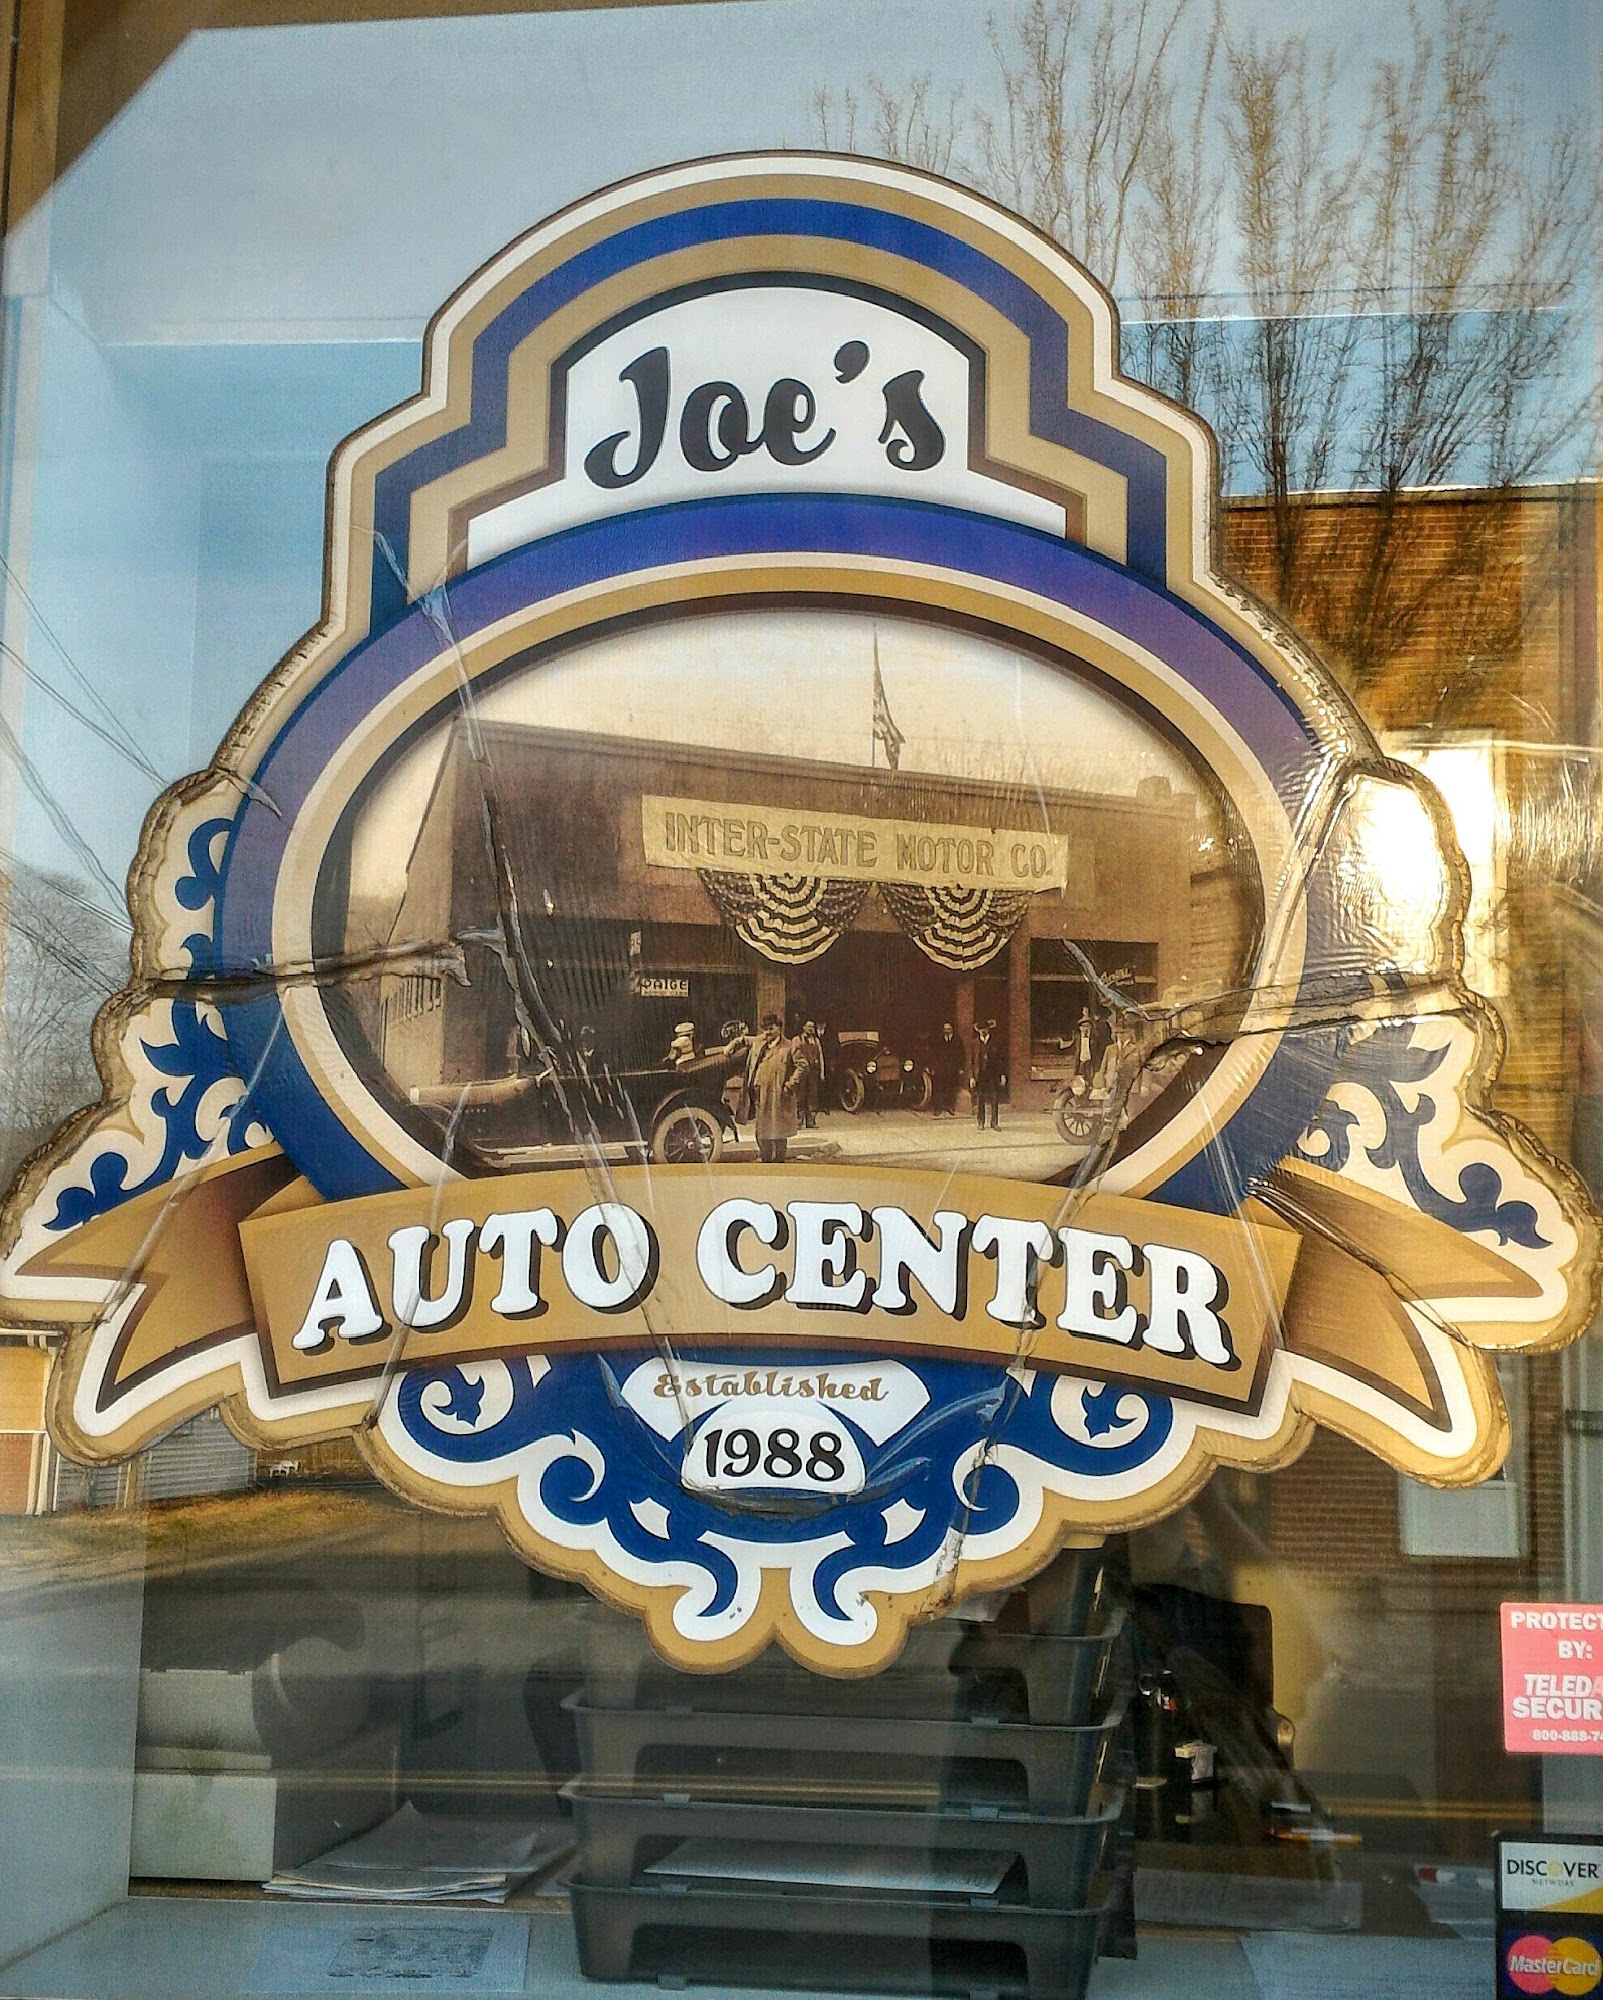 Joe's Automotive Center